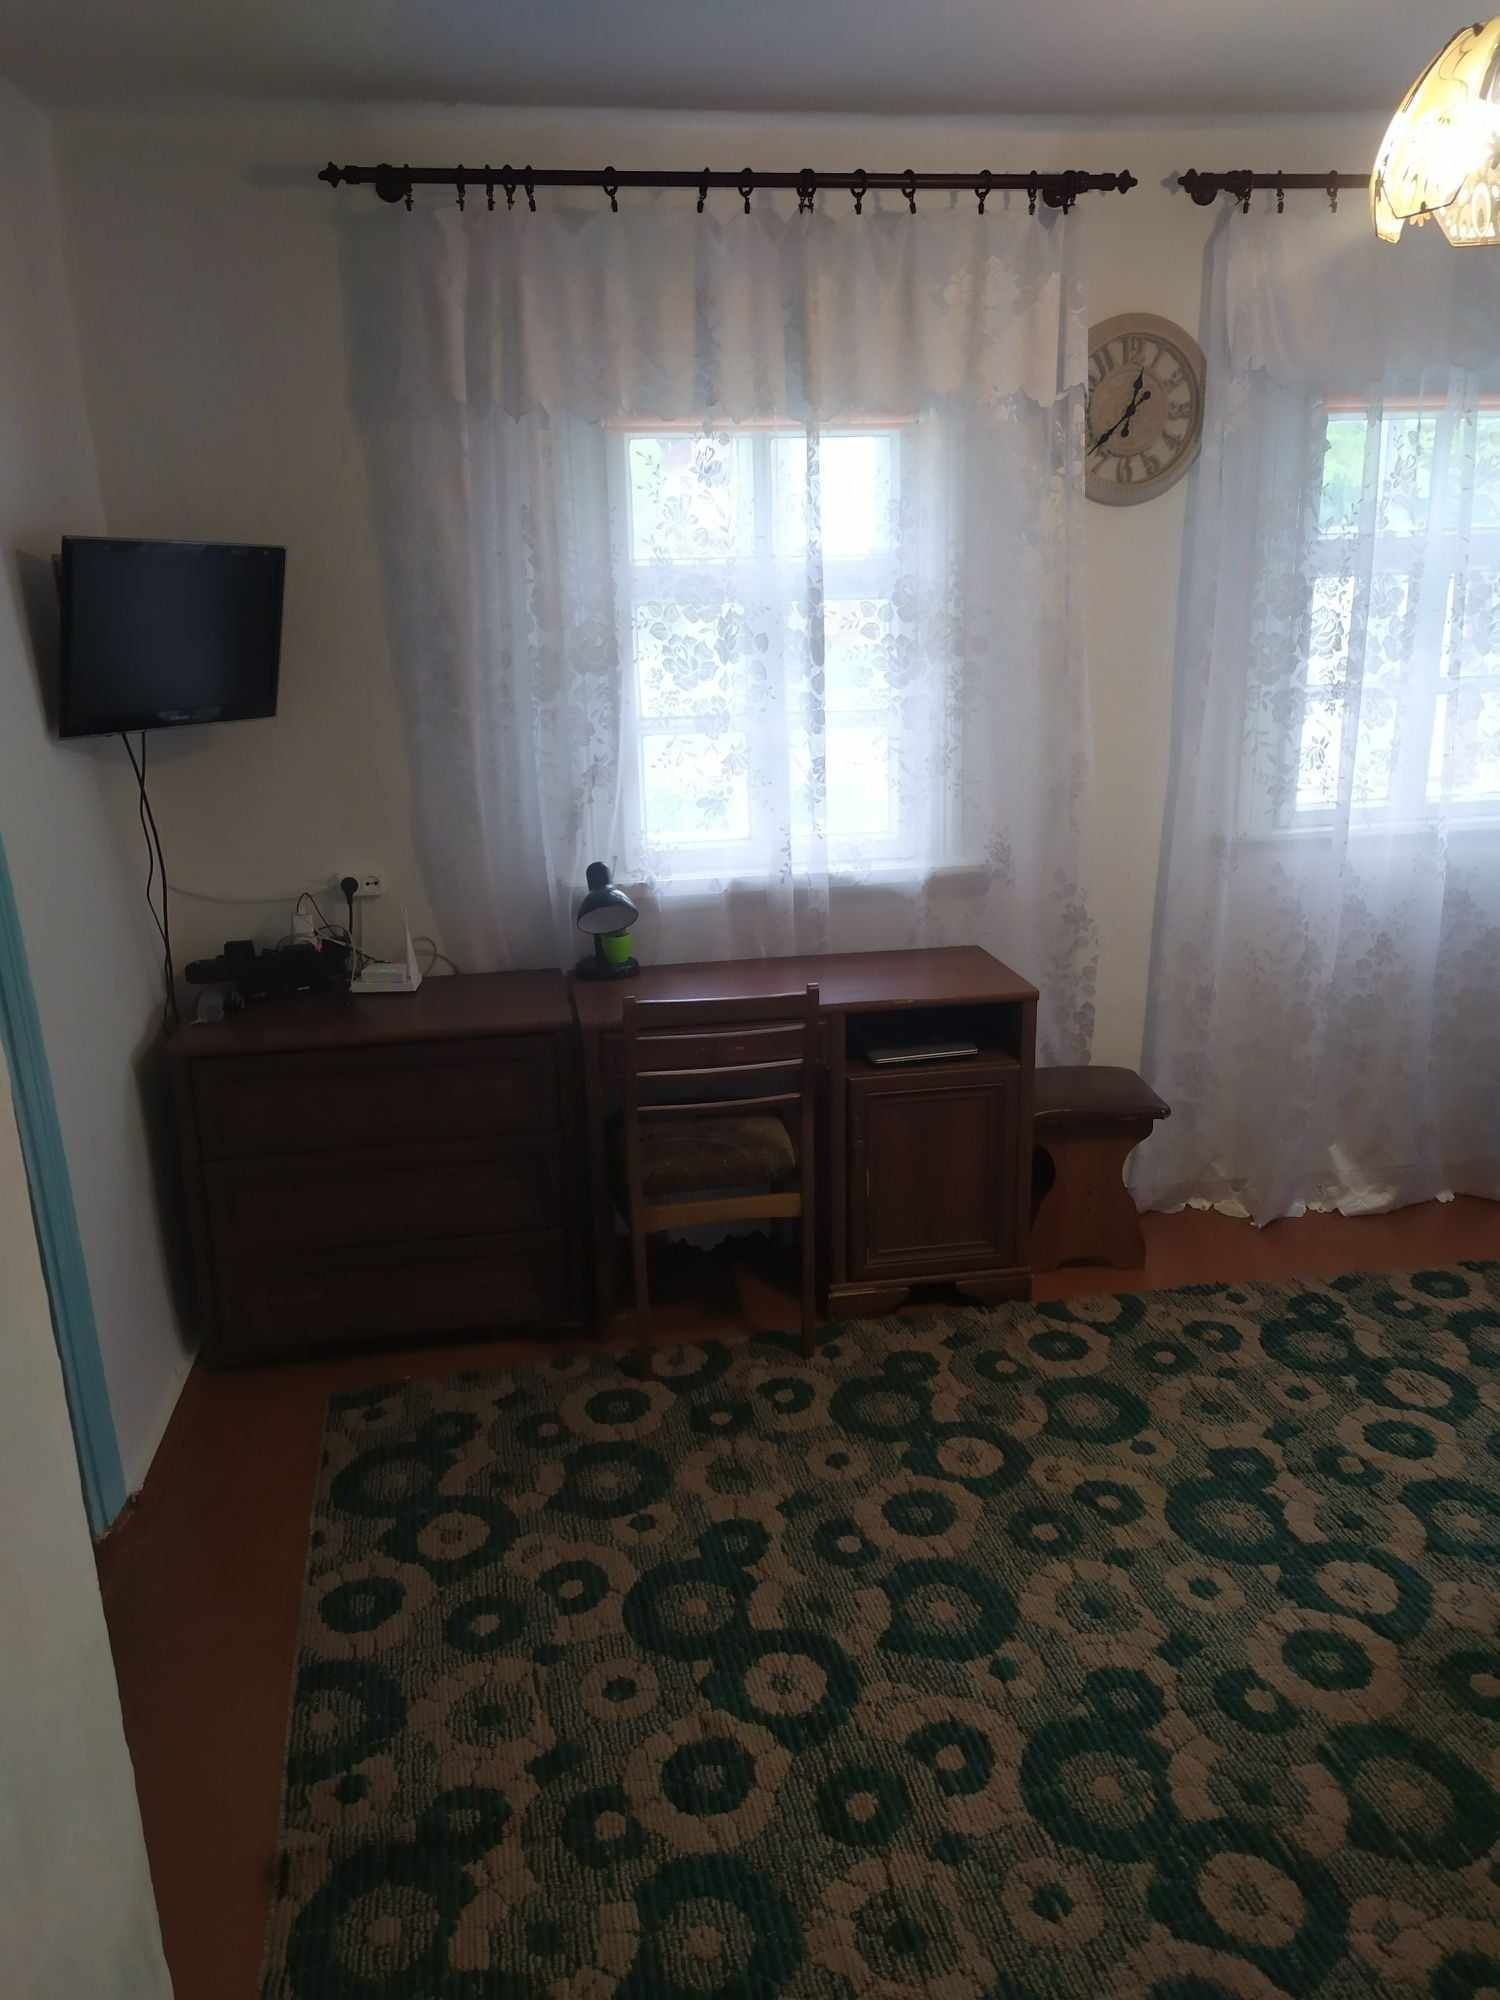 Продам будинок в селі Широка Гребля Вінницького району.